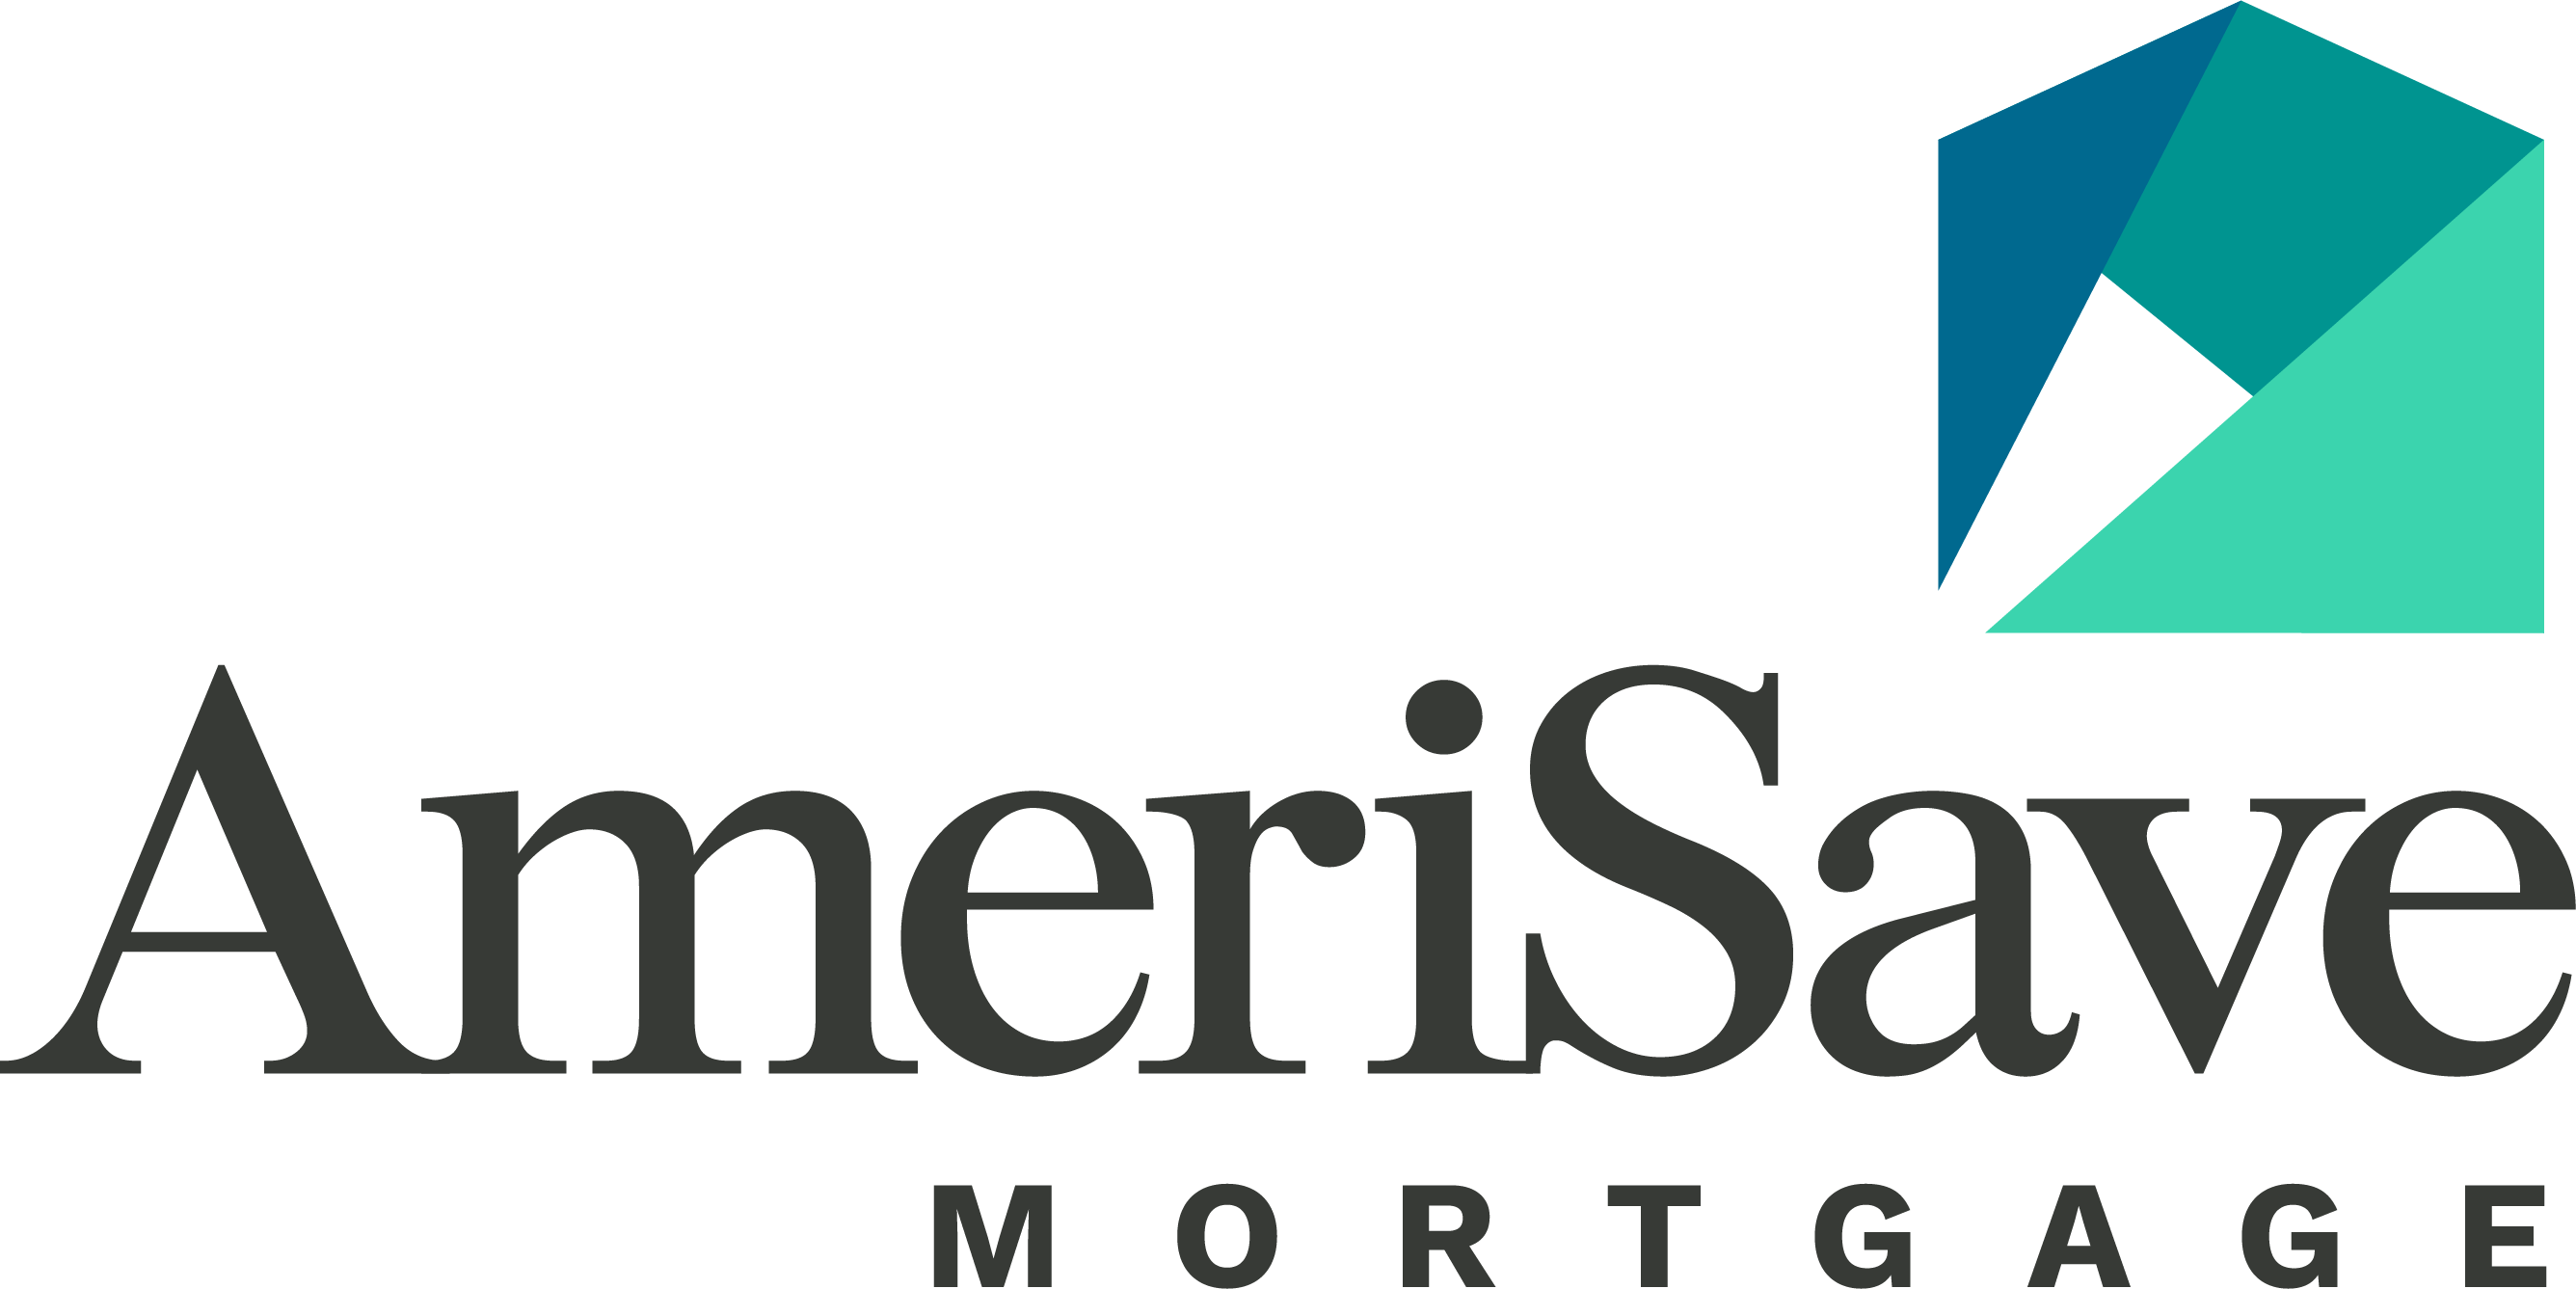 Mortgage Broker Classes & Loan Originator Licensing - VanEd